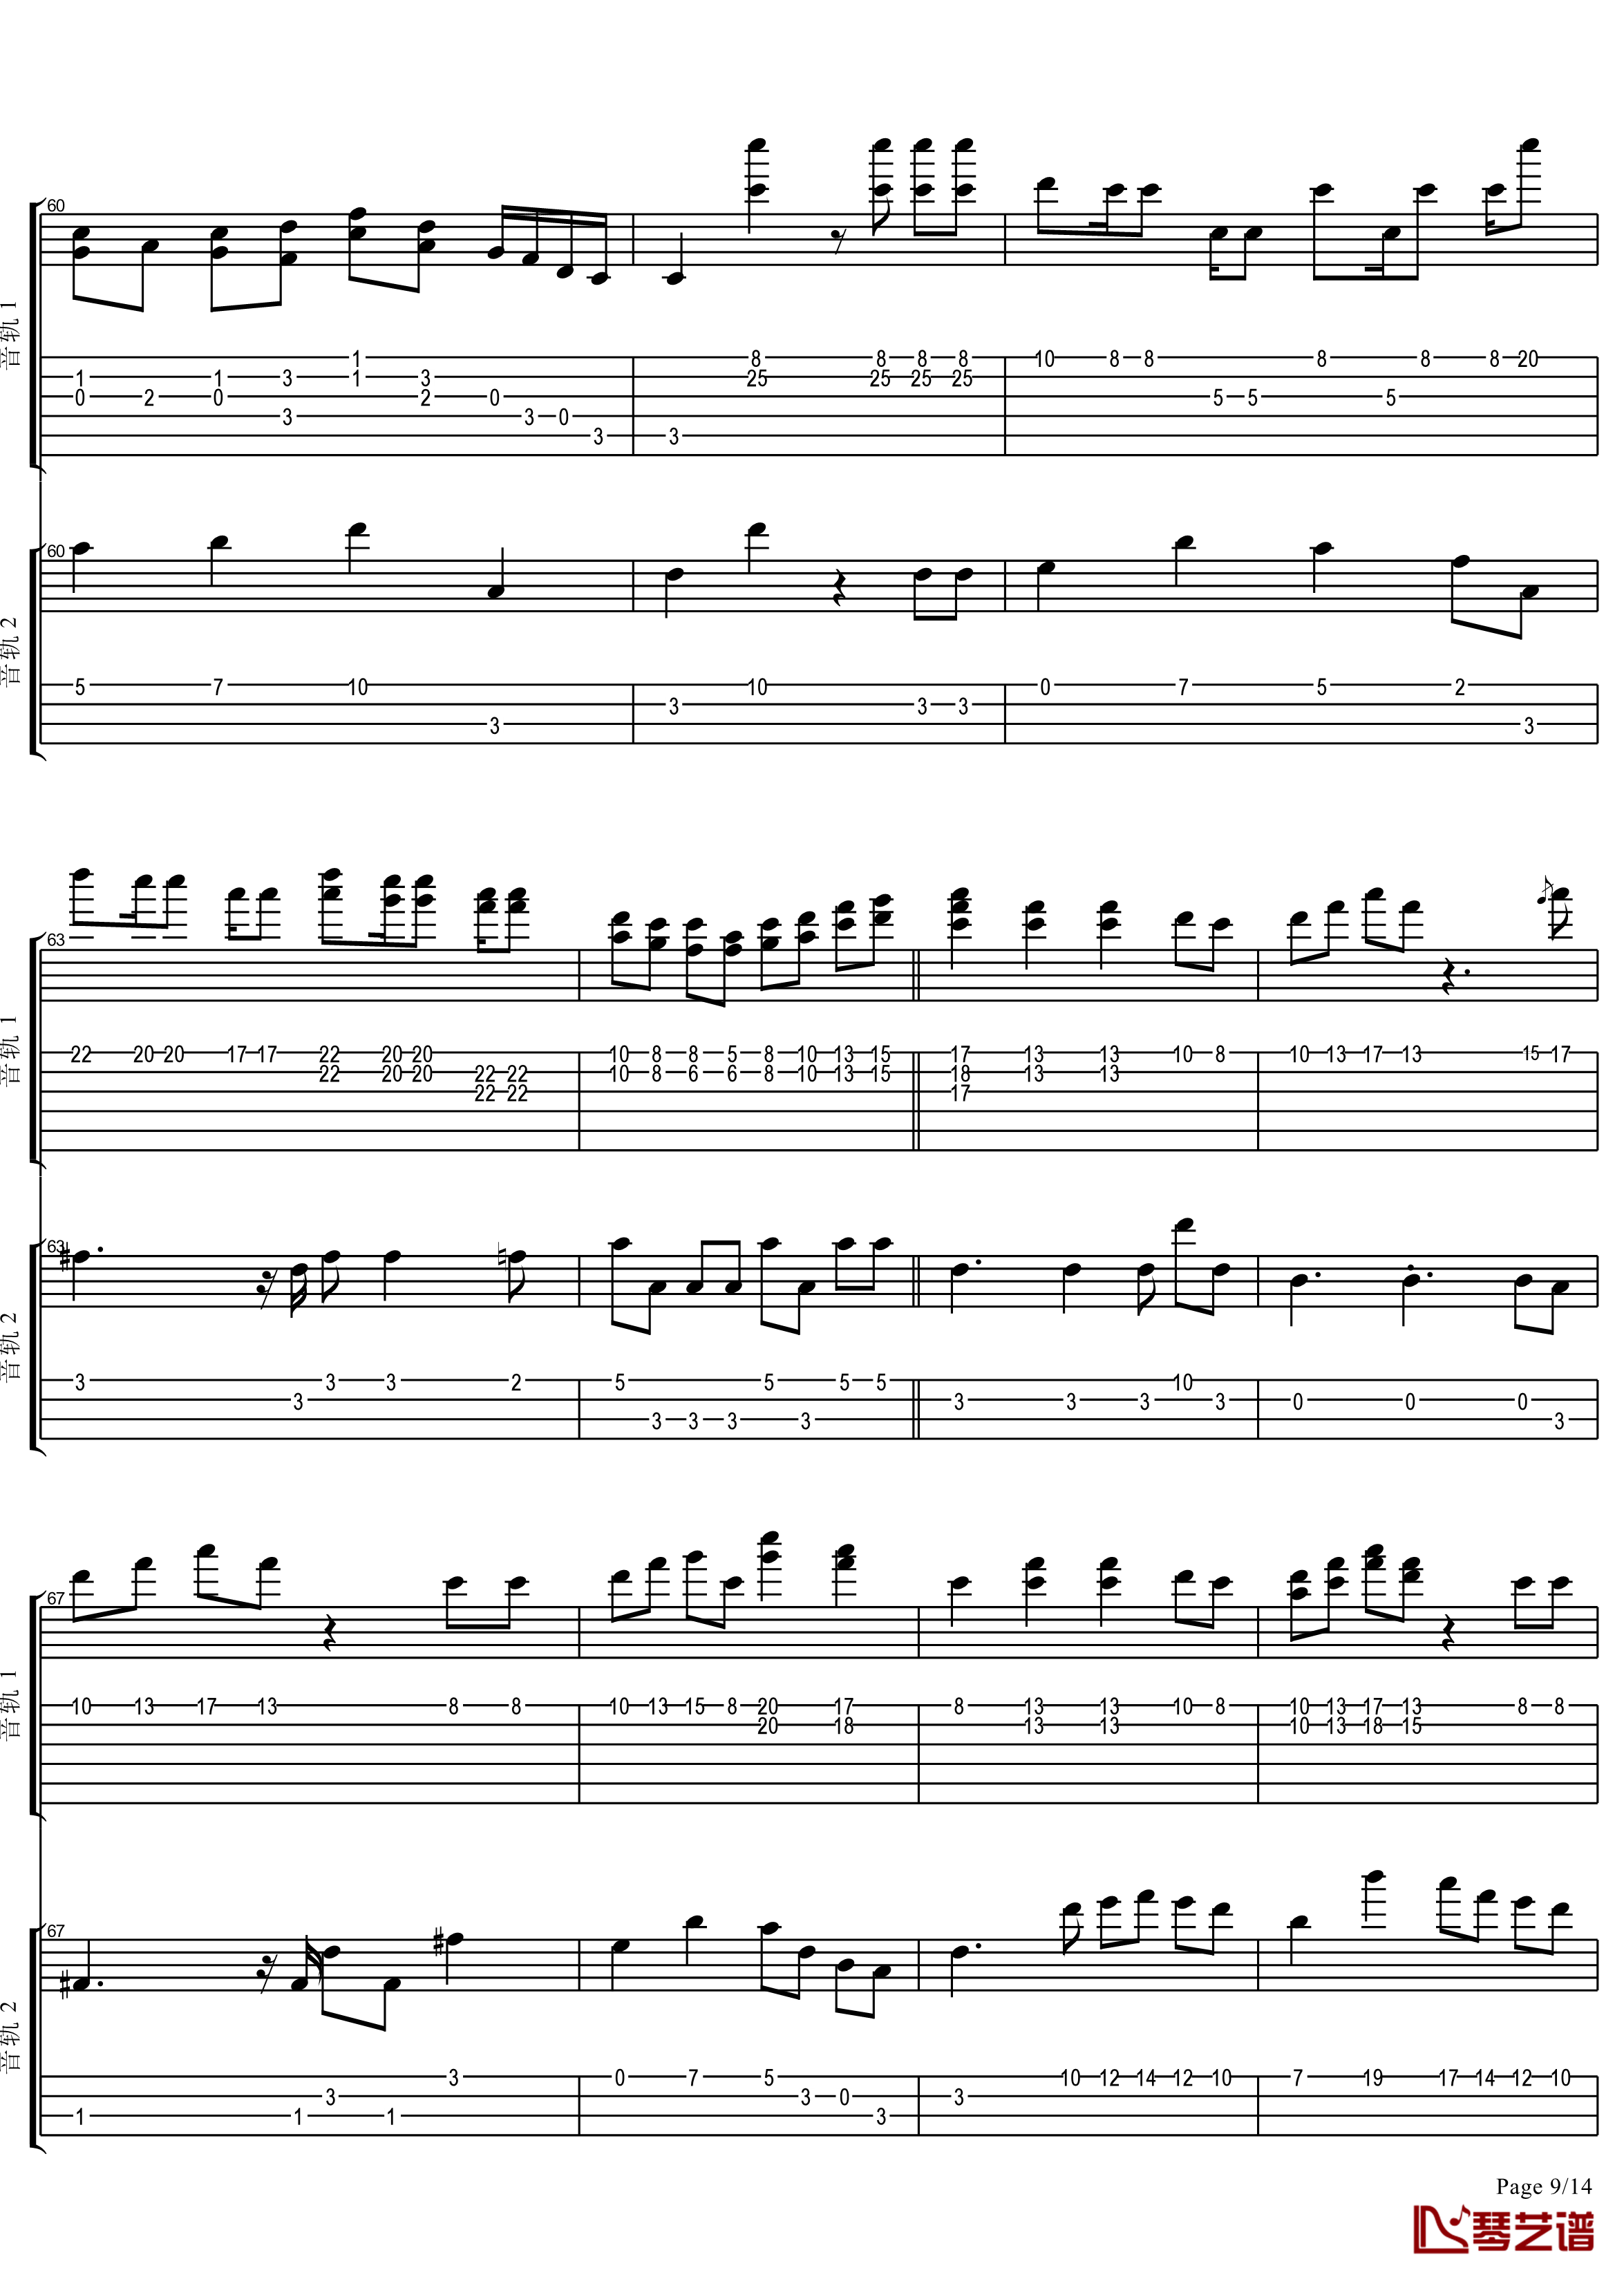 十八般武艺钢琴谱-完美演奏版-王力宏9